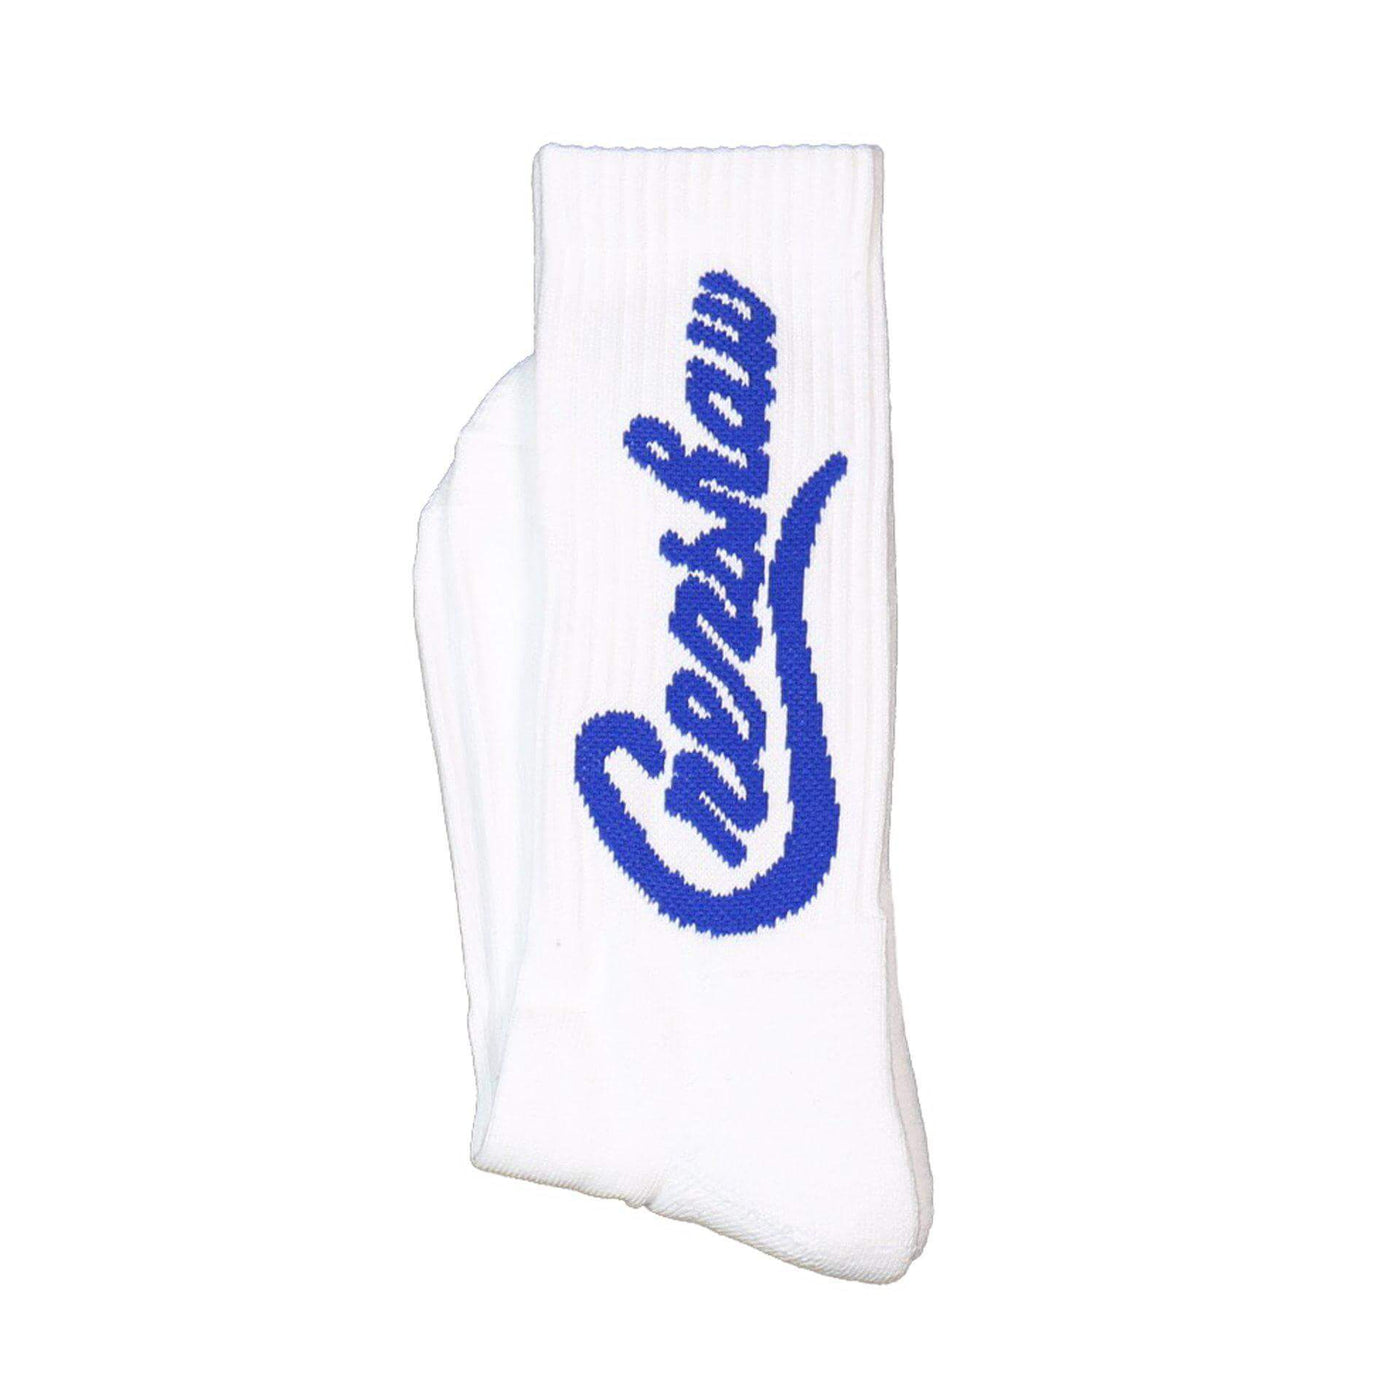 Crenshaw Socks - White/Royal-The Marathon Clothing